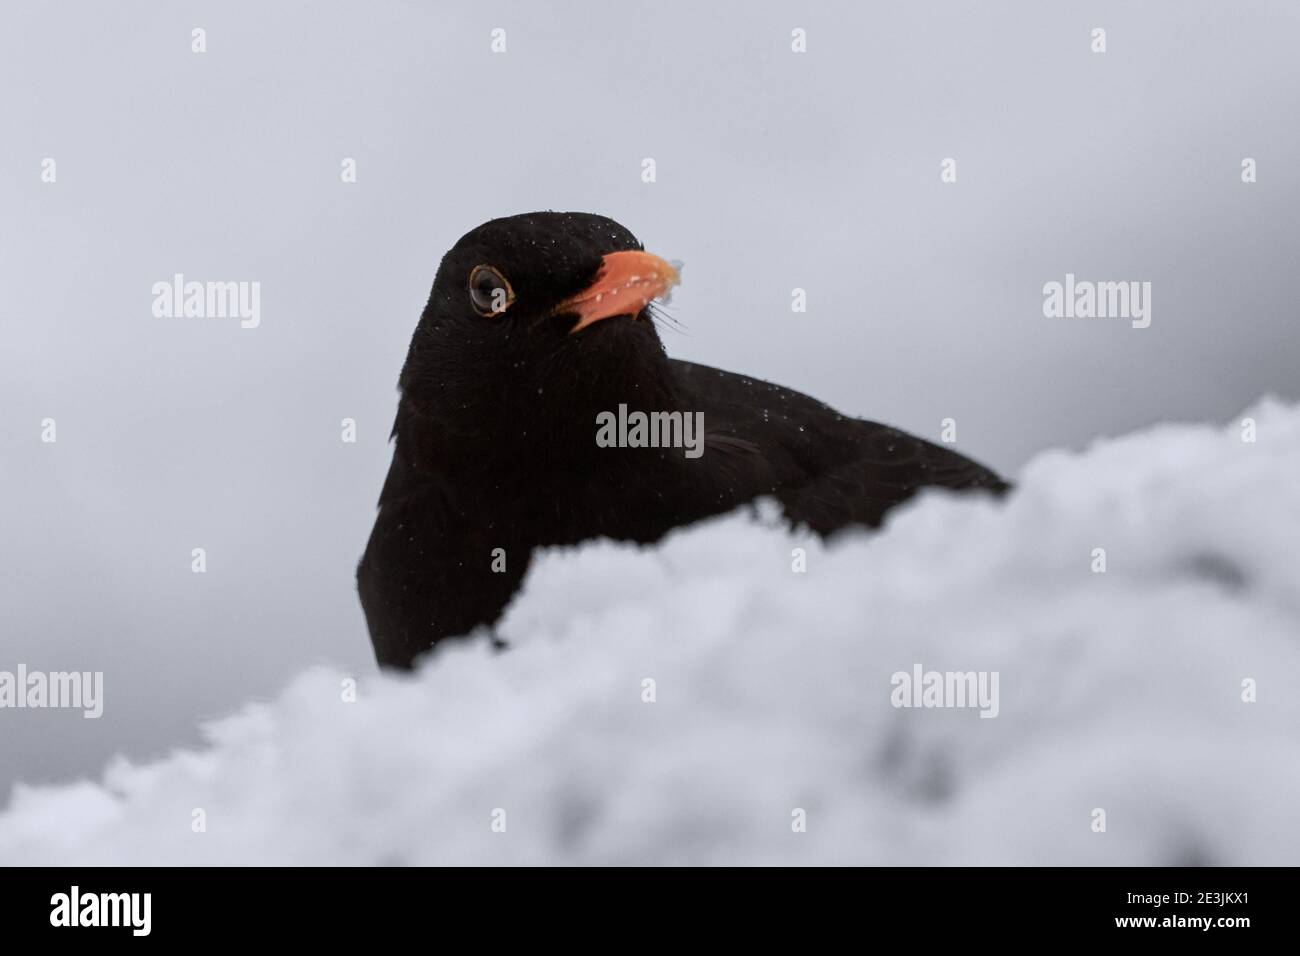 Bird (Turdus merula) nascondendosi dietro il mucchio di neve in una fredda giornata invernale Foto Stock